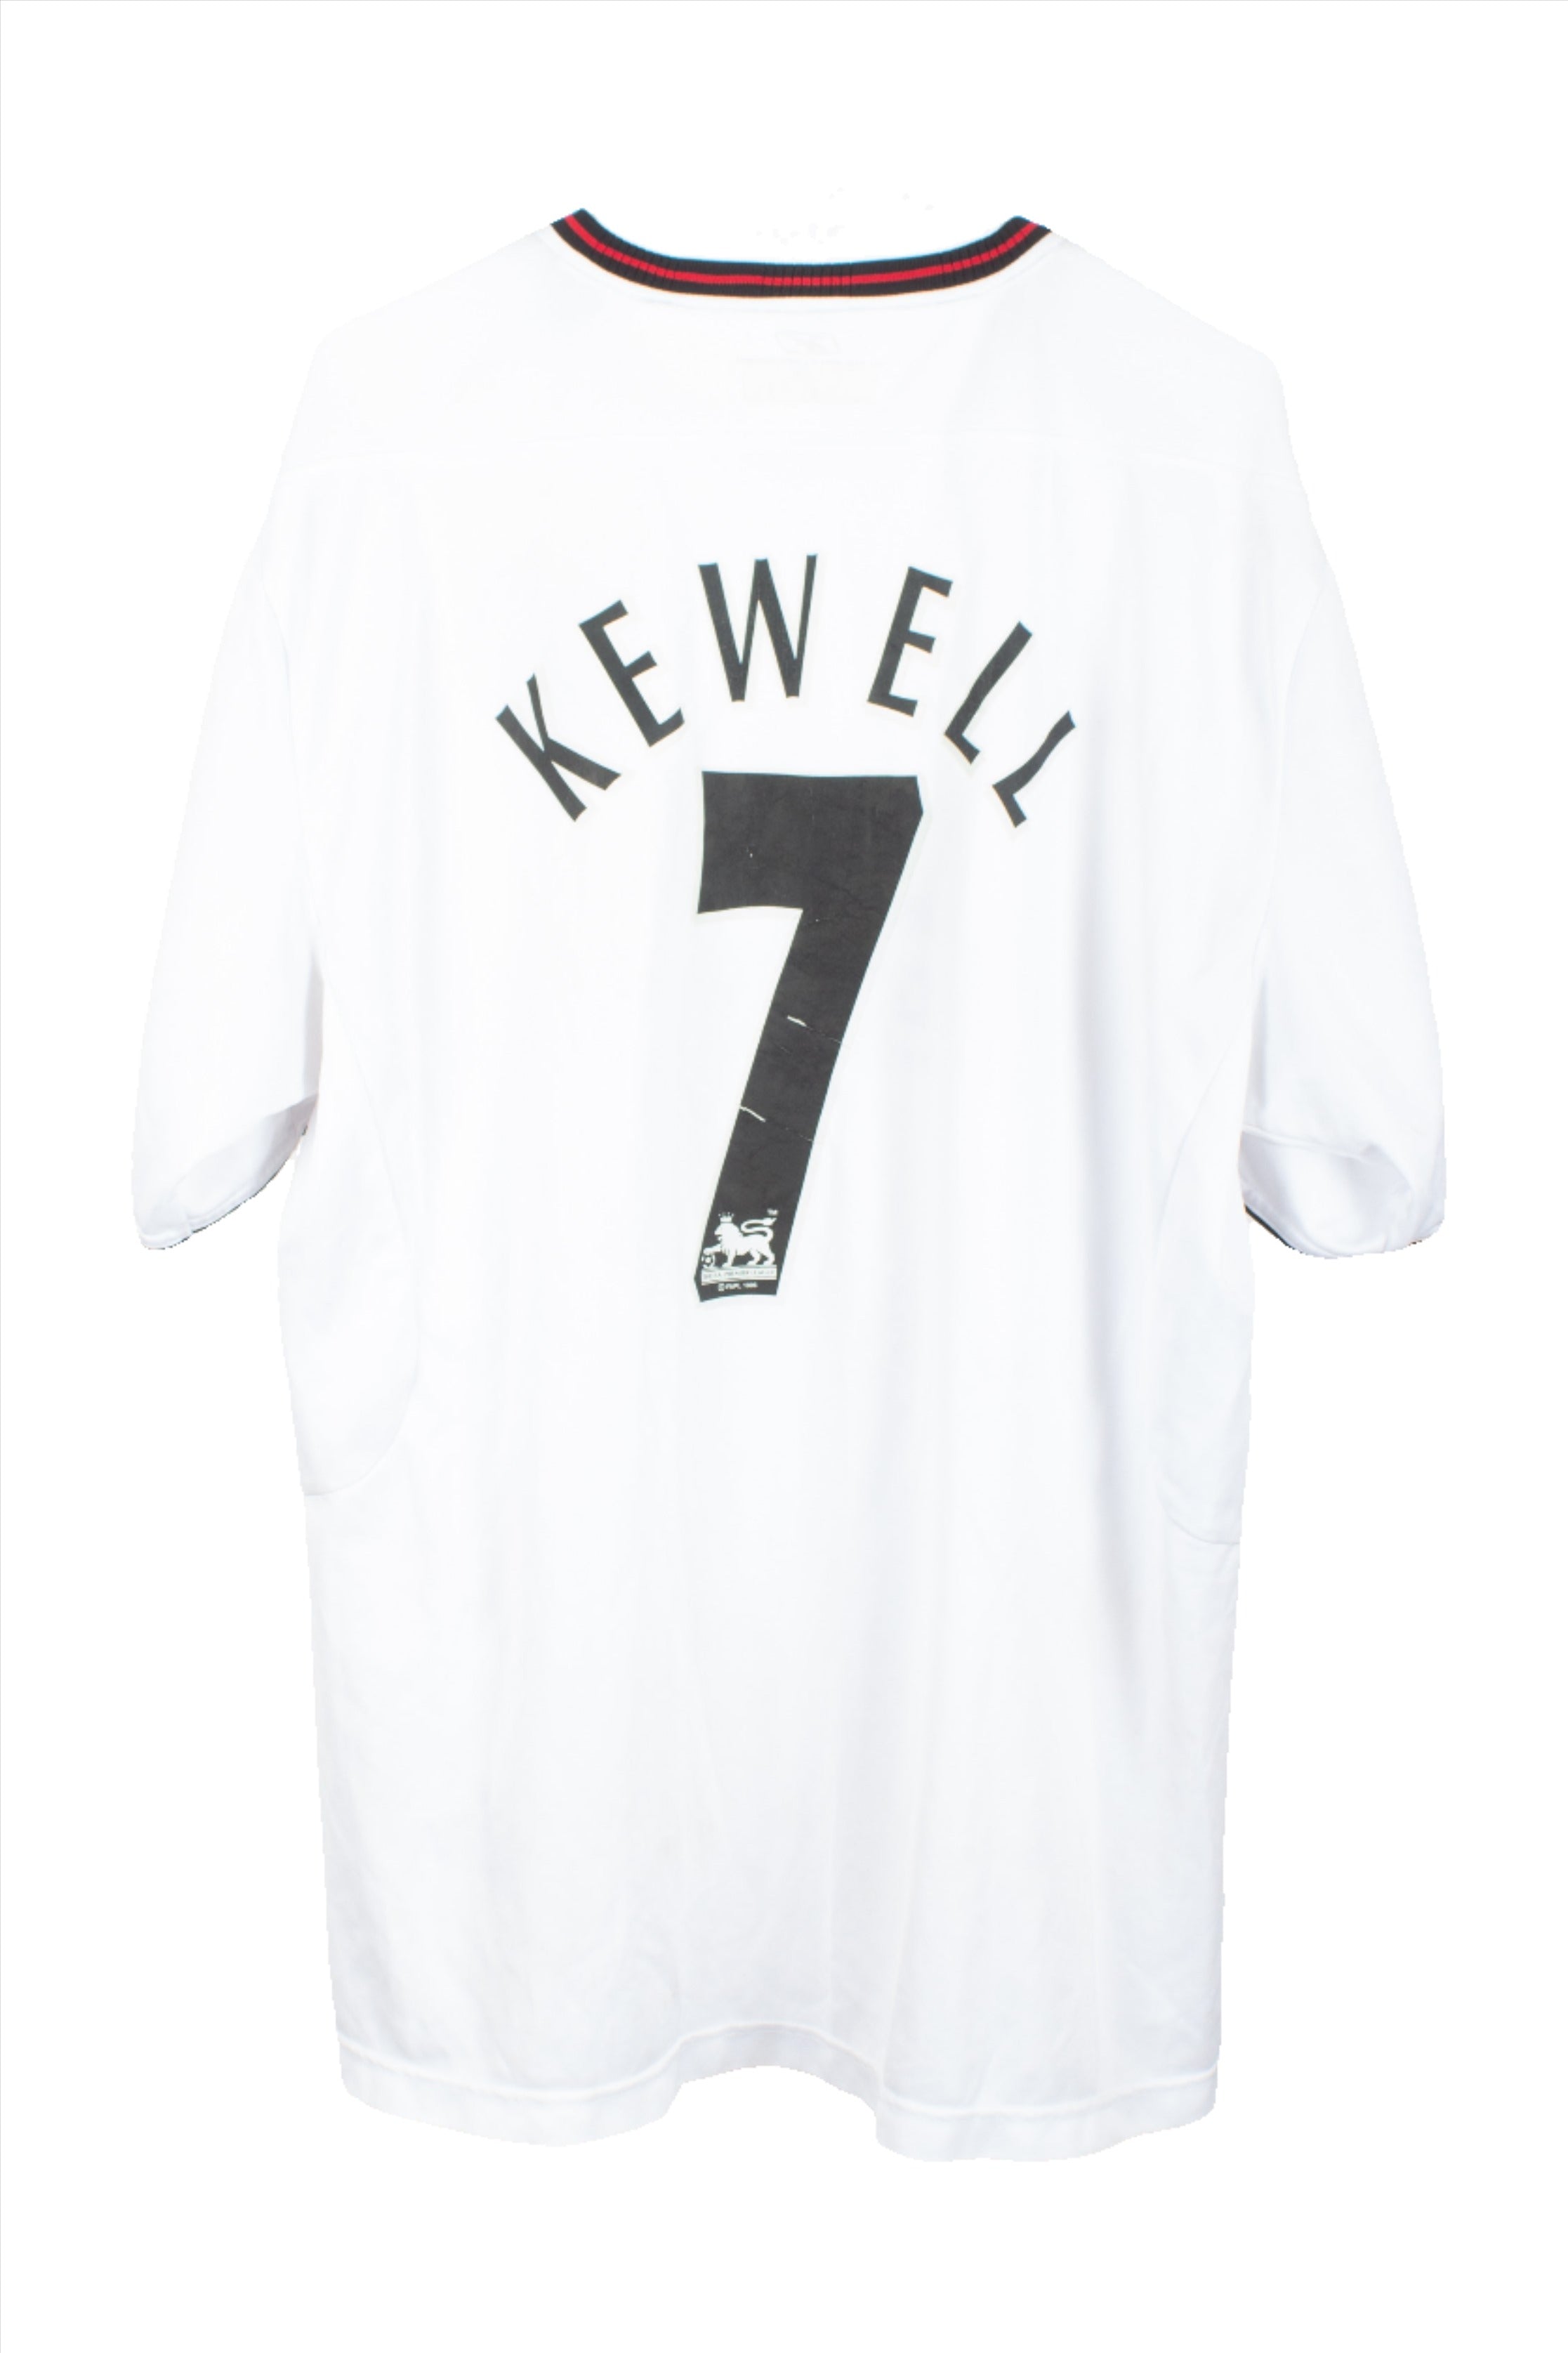 Liverpool 2003/05 Away/Third Shirt (Kewell #7)